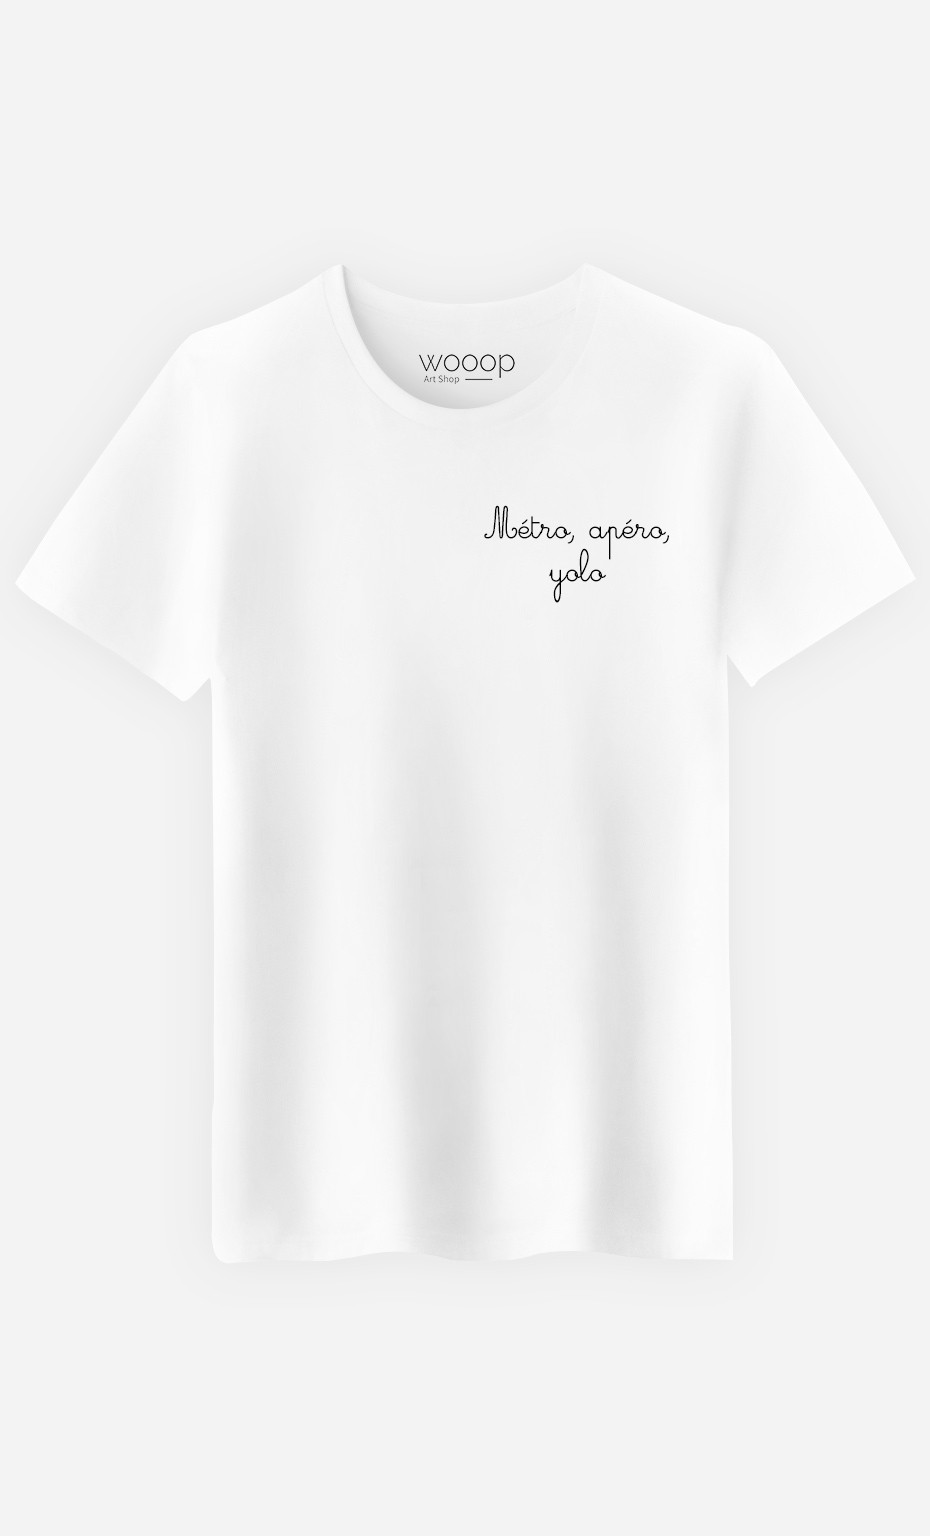 T-Shirt Homme Métro, Boulot, Yolo - Brodé